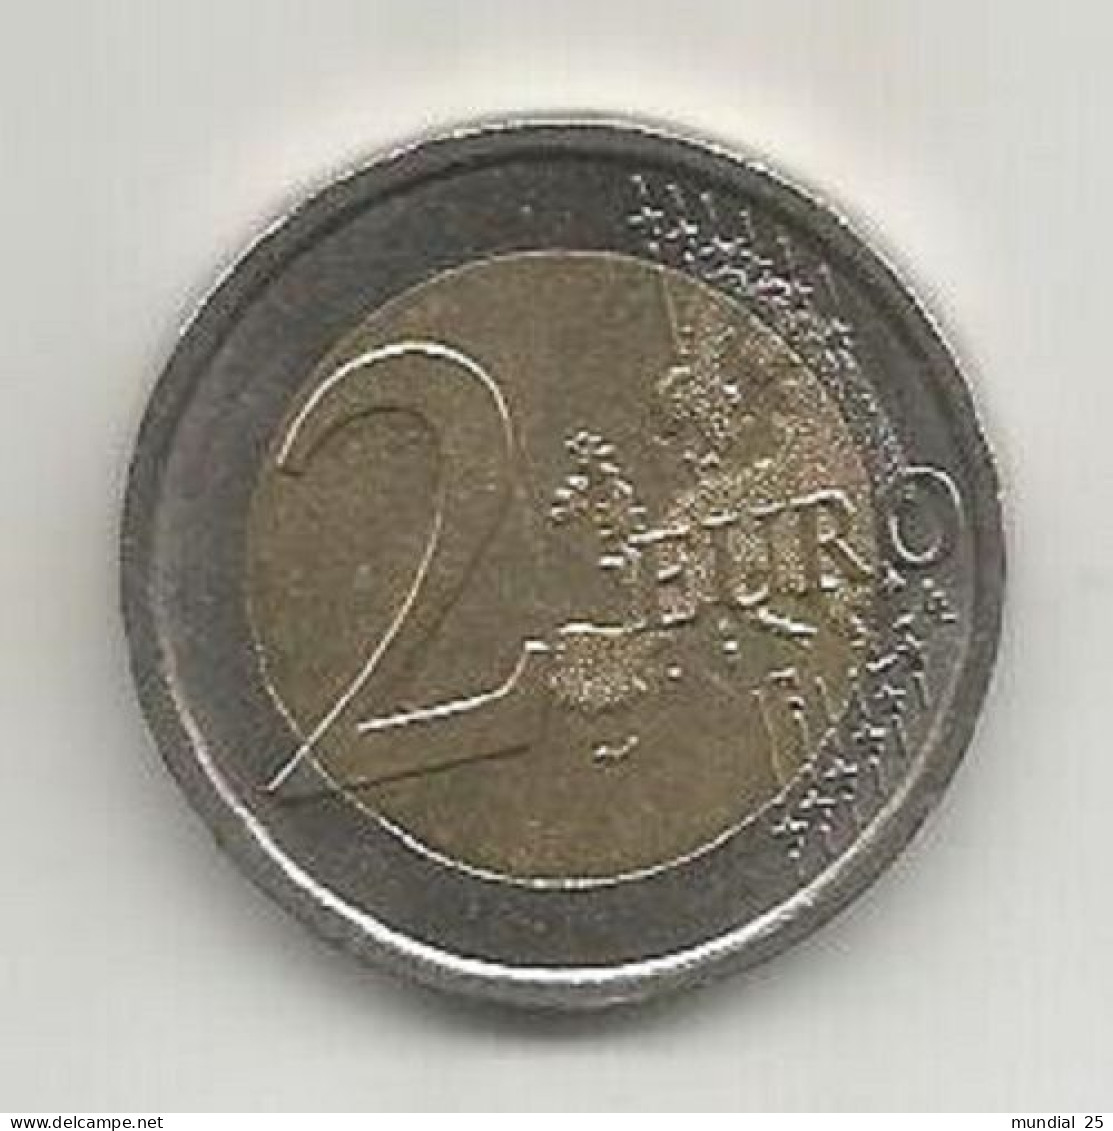 ITALY 2 EURO 2012 (R) - EUROCOINAGE, 10th ANNIVERSARY - Italy